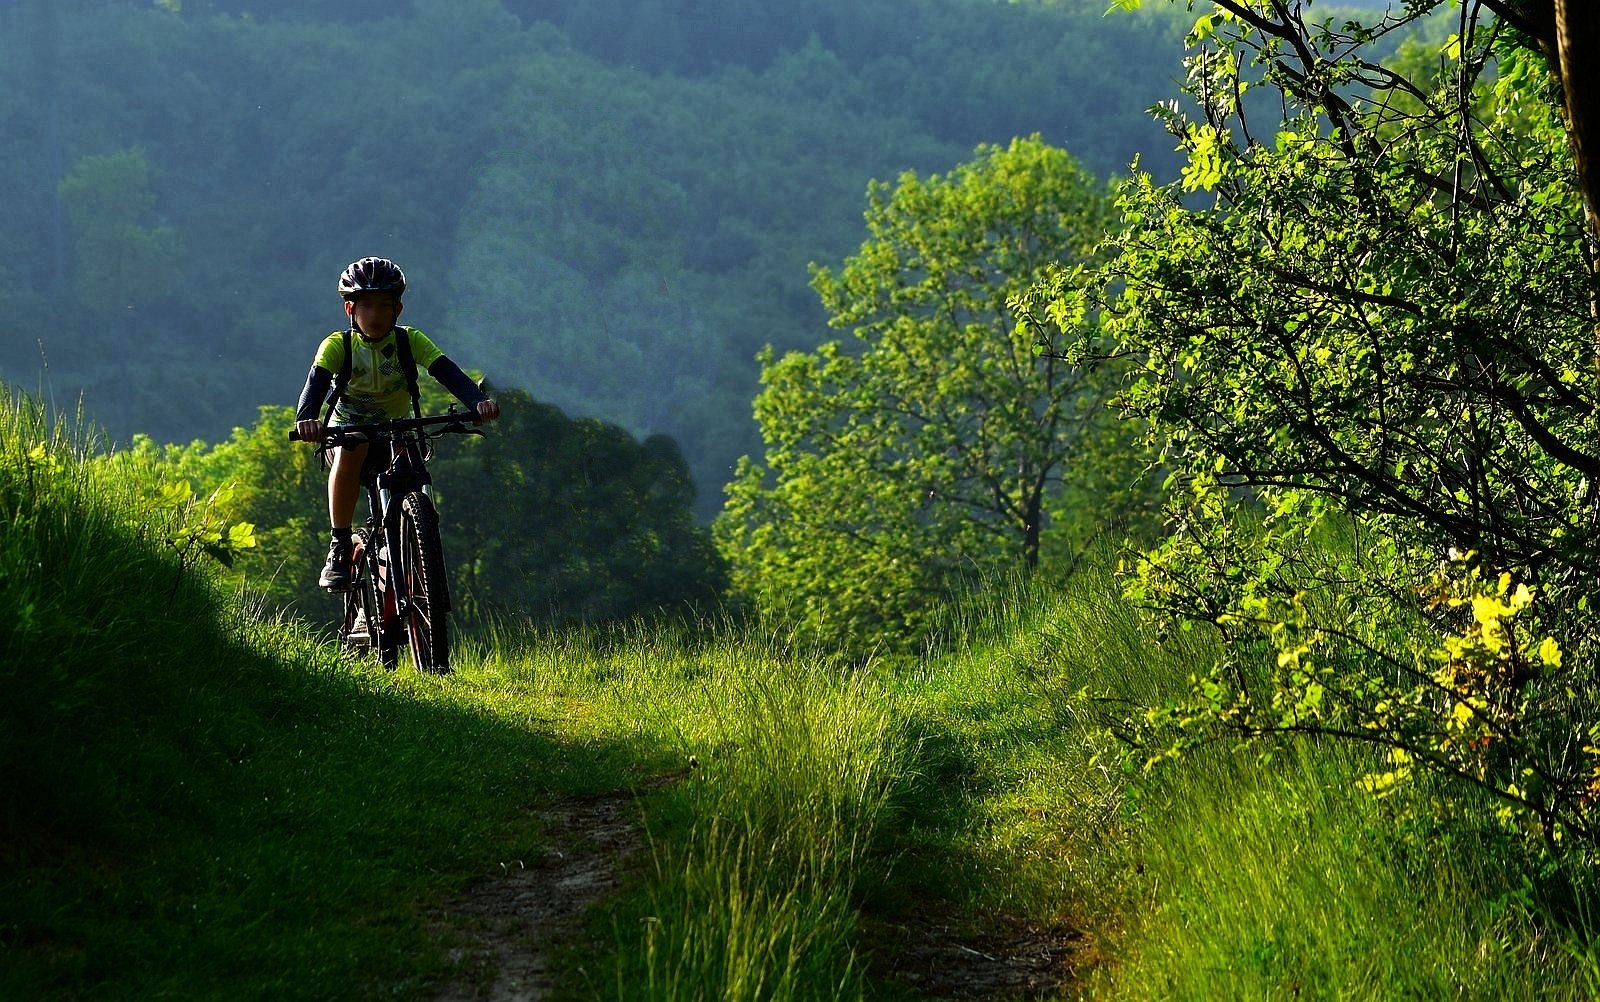 dítě na bicyklu v přírodě, cesta, zeleň / ima